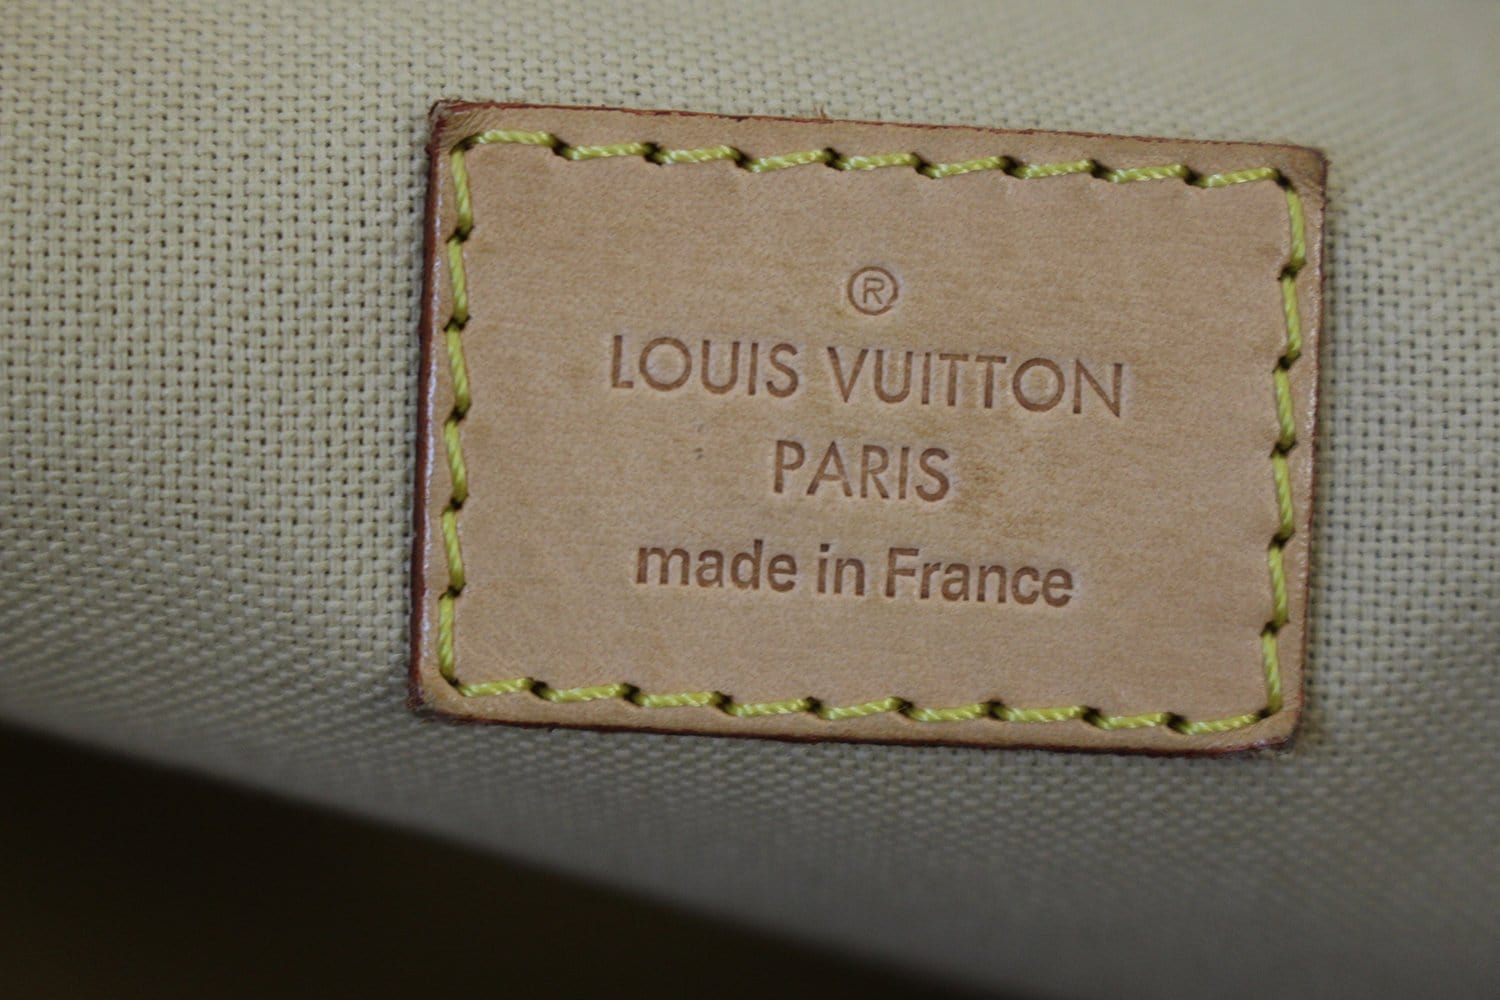 In LVoe with Louis Vuitton: Louis Vuitton Damier Azur Soffi